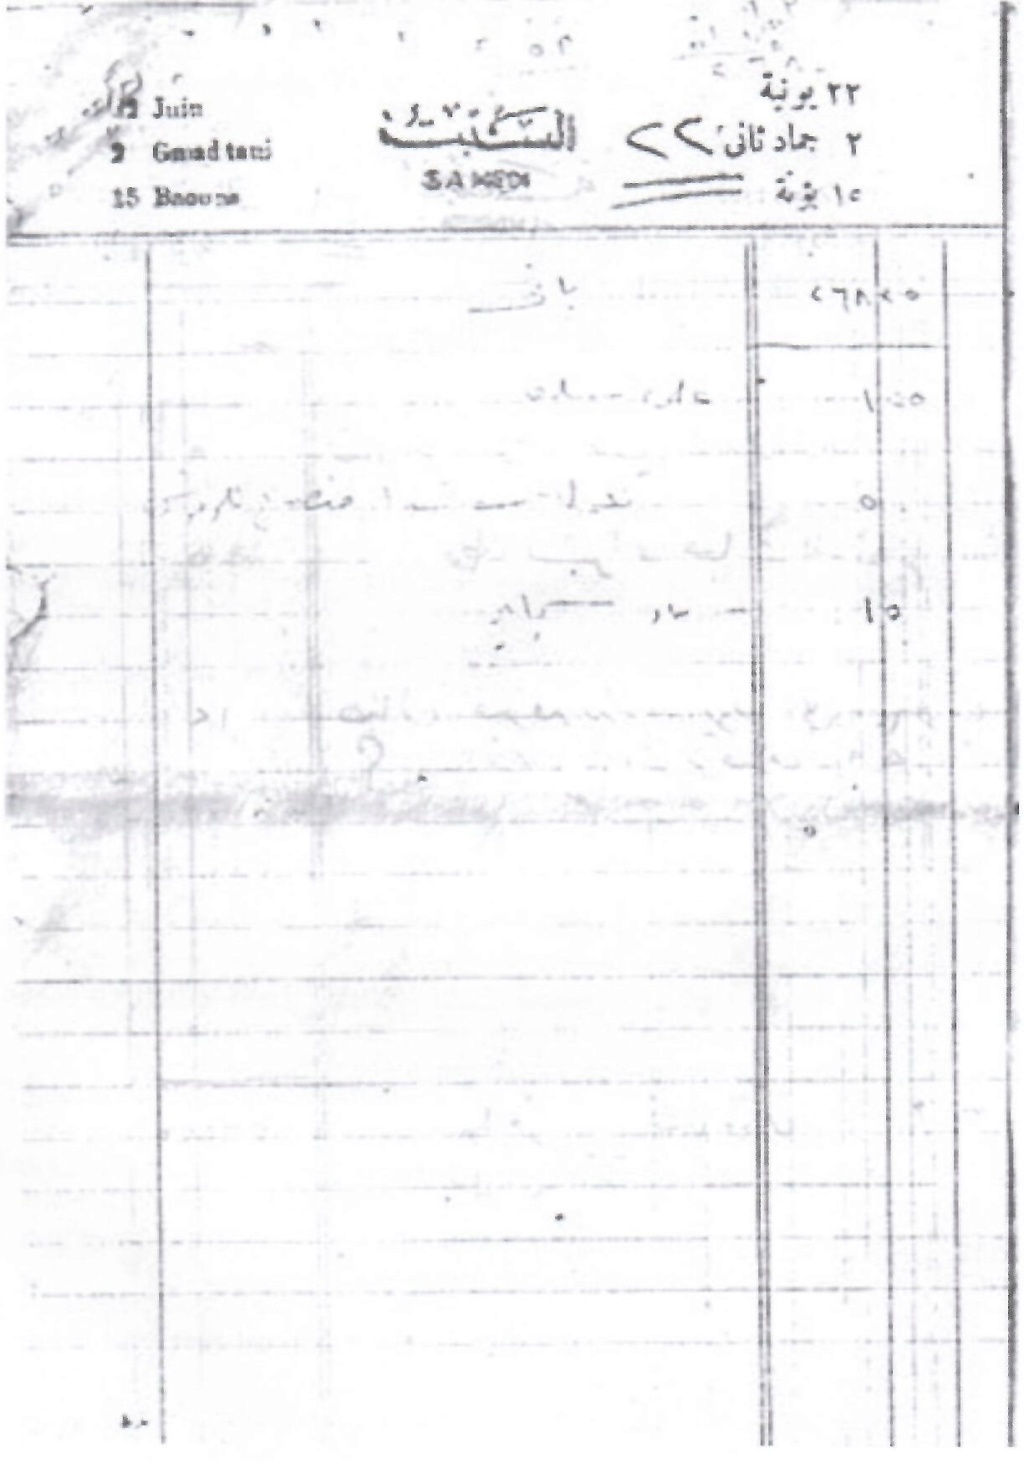 وثيقة مكتوبة : مجموعة أوراق بخط يد سعاد حسني بتواريخ مختلفة 11910